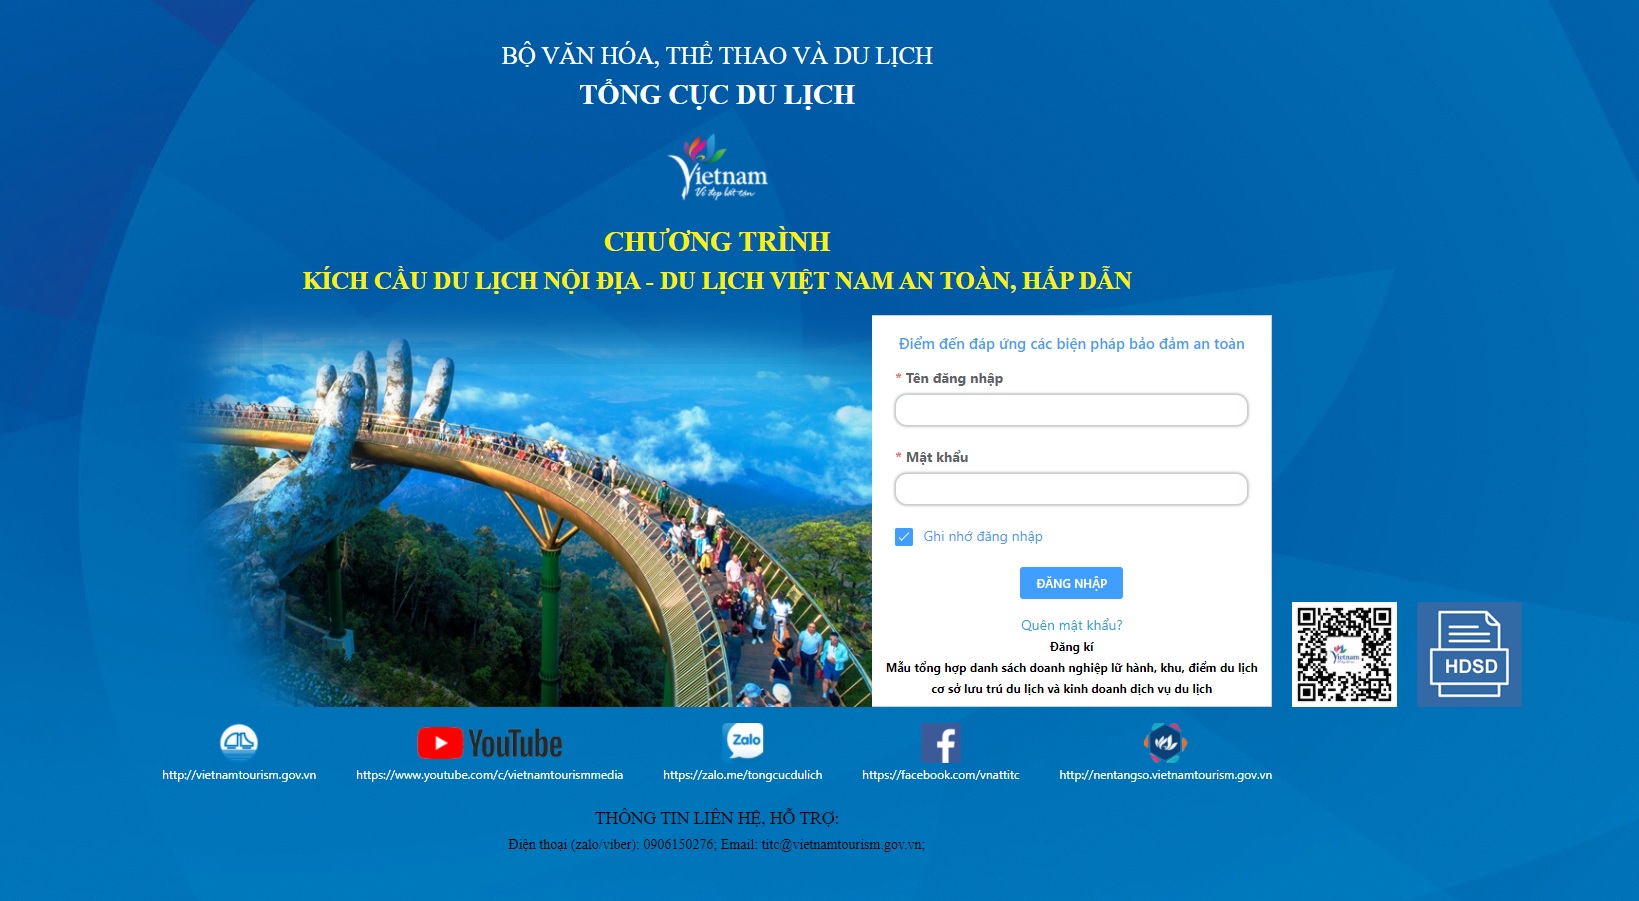 Hướng dẫn đăng ký và tự đánh giá an toàn COVID-19 trên website http://safe.tourism.com.vn